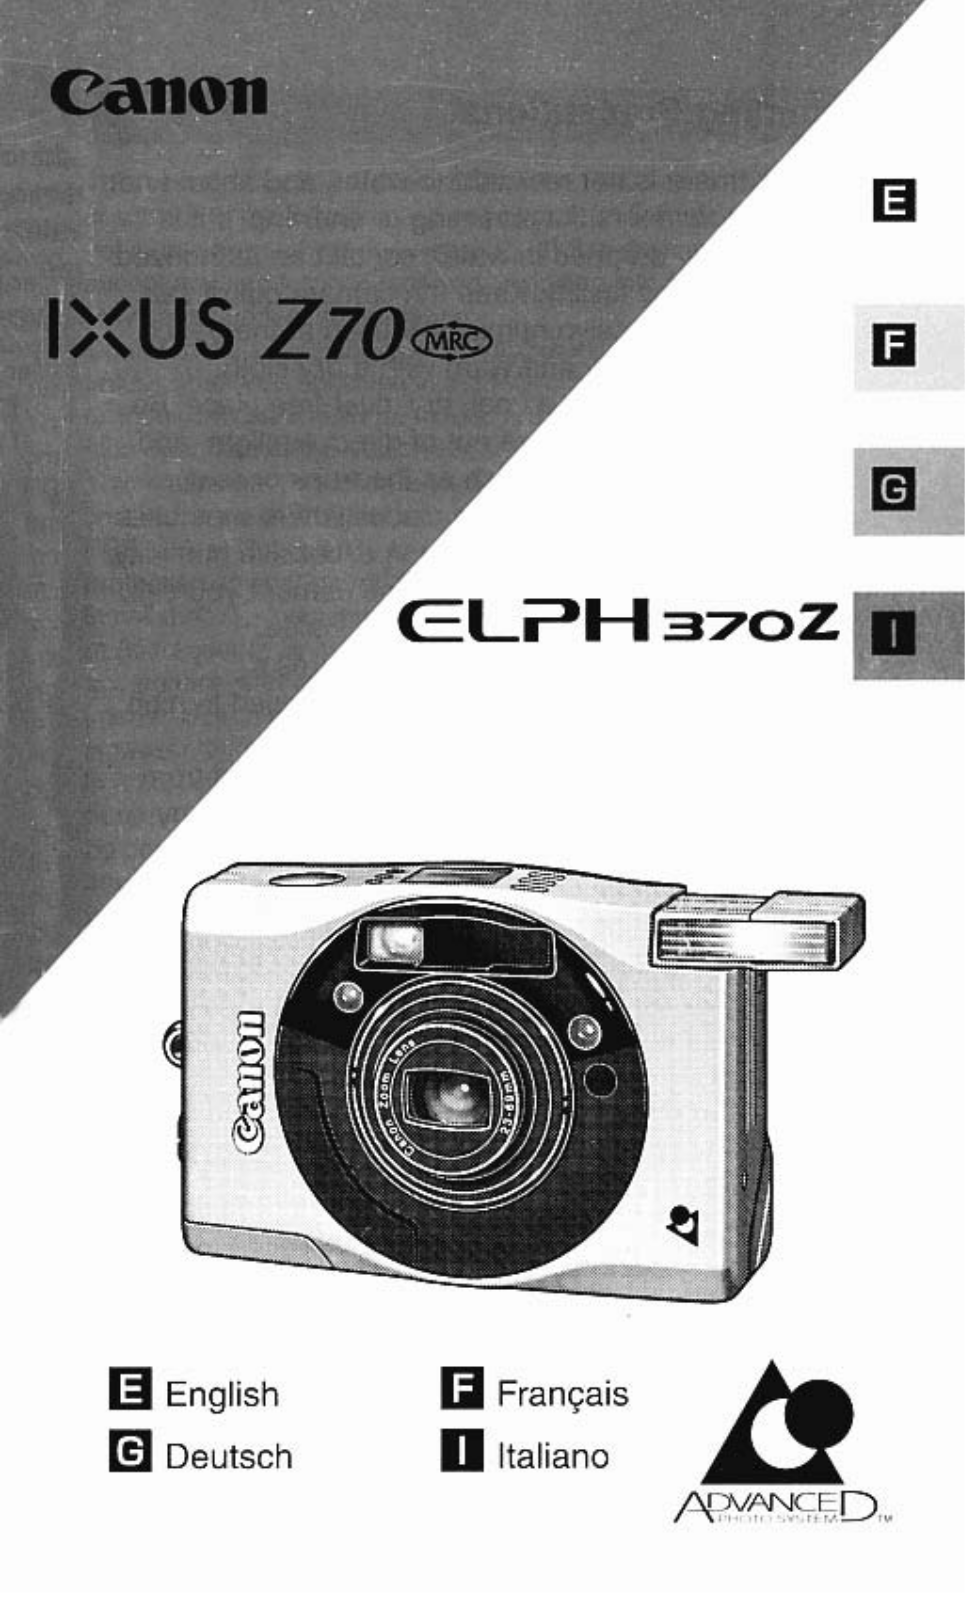 Canon ELPH 370Z User Manual